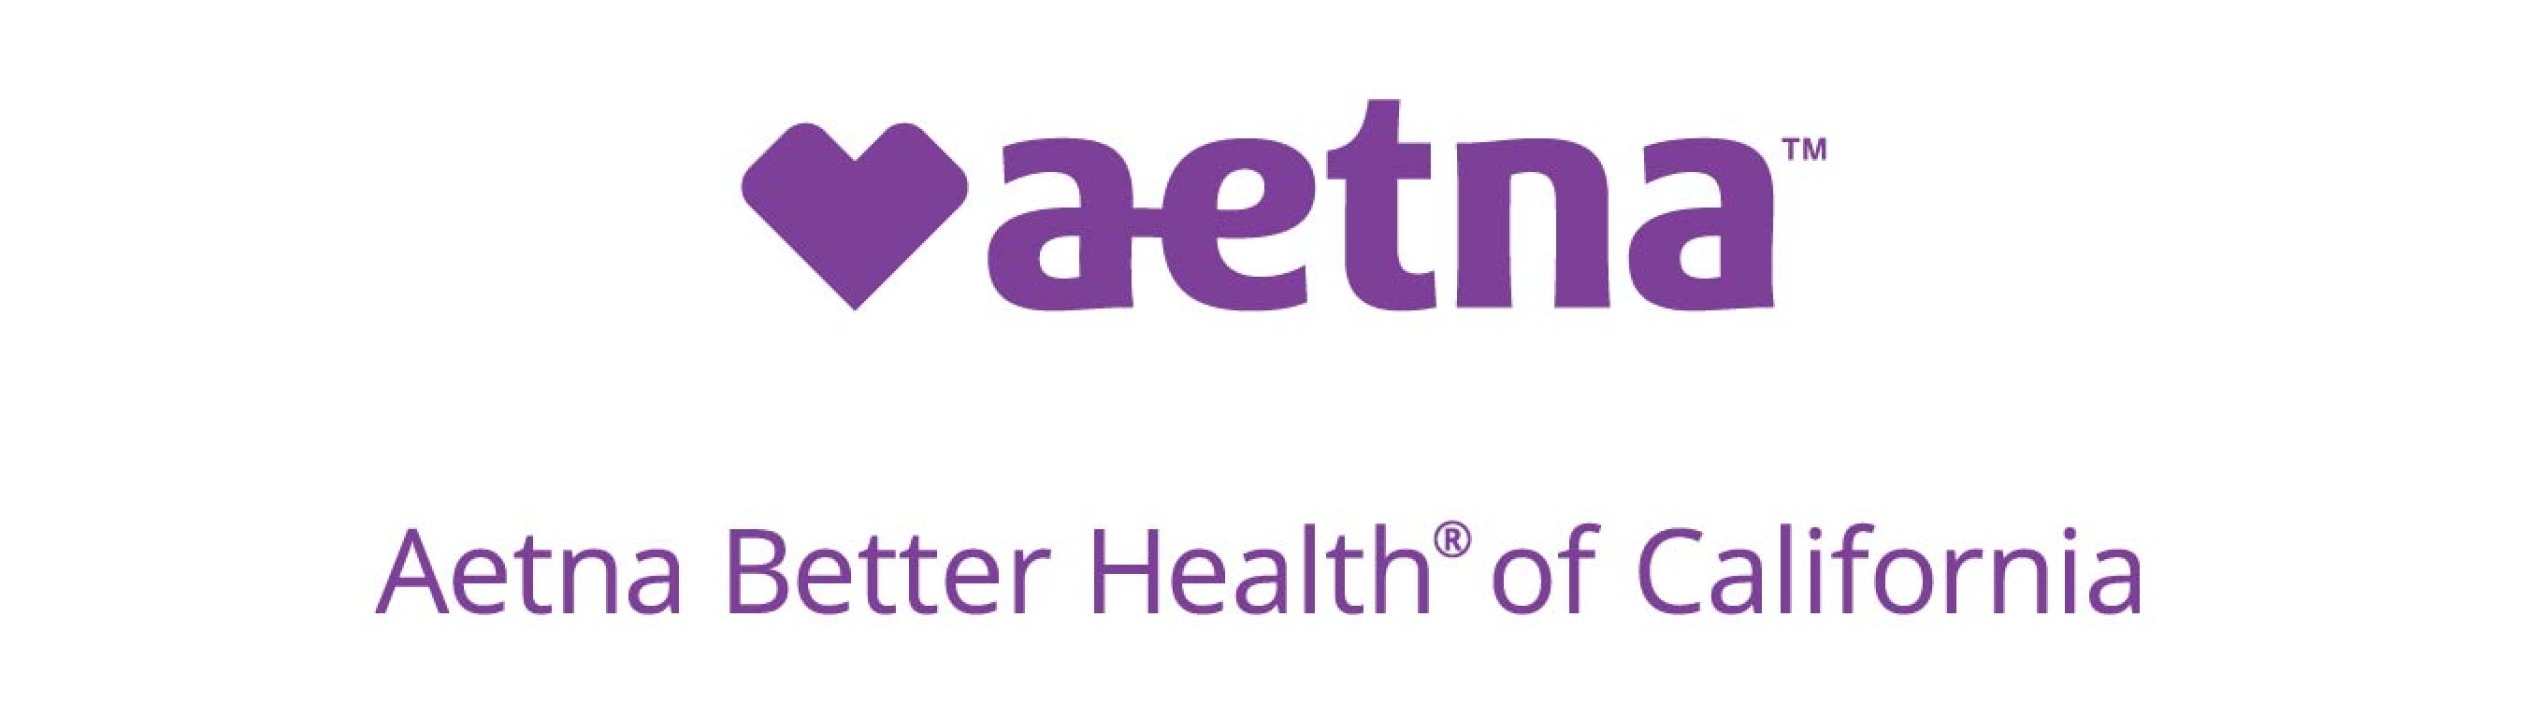 Aetna Better Health of California